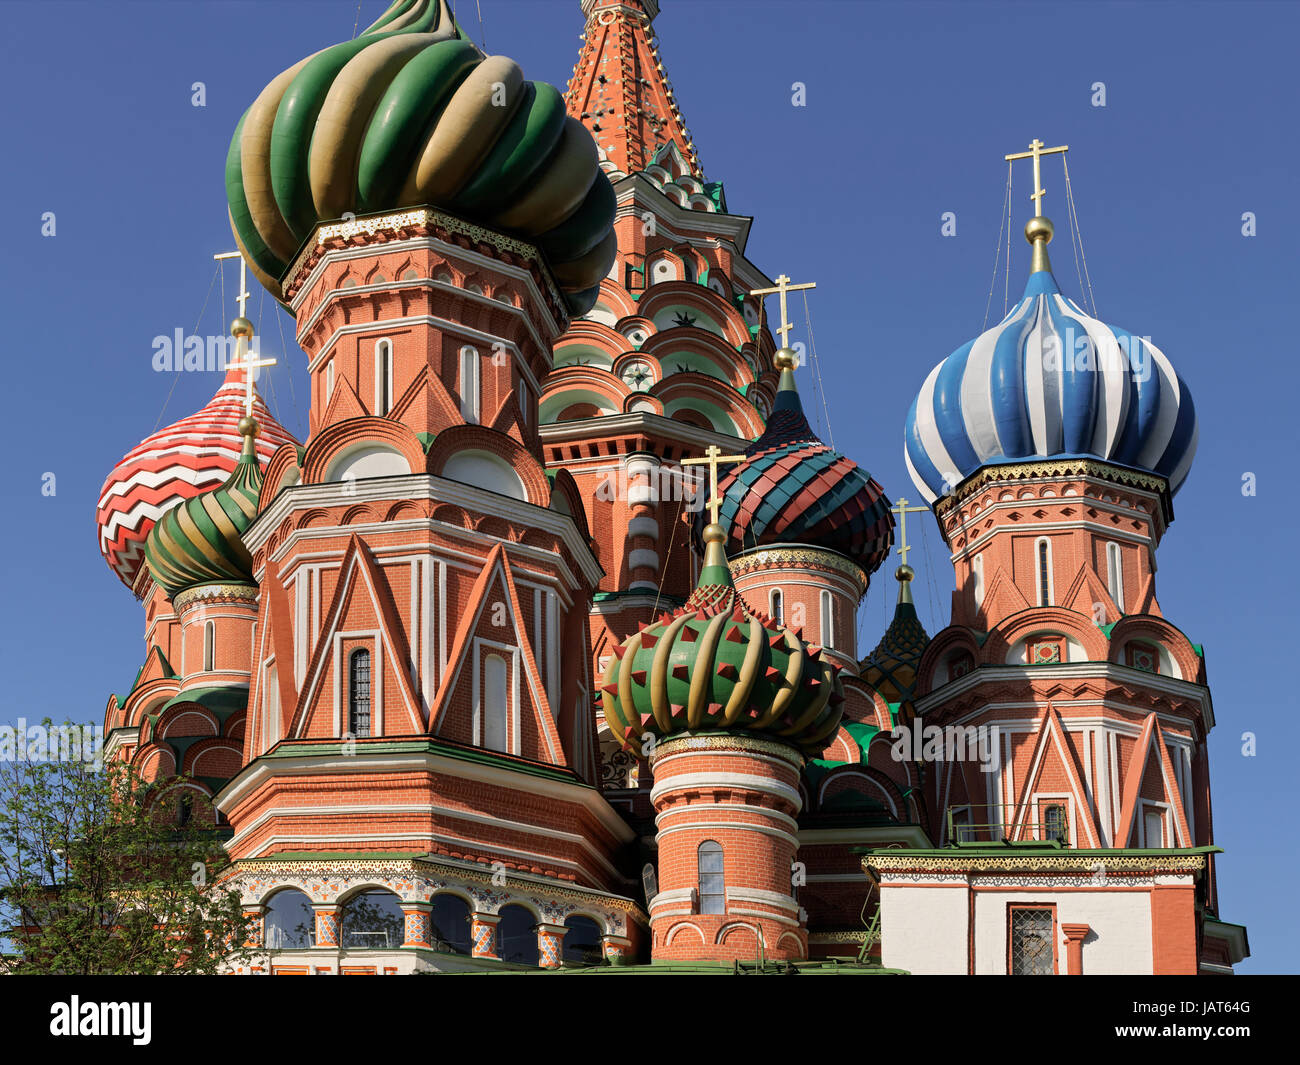 Cattedrale della Intersession, o la Cattedrale di Vasily Beata, Piazza Rossa di Mosca, Russia, Europa Foto Stock